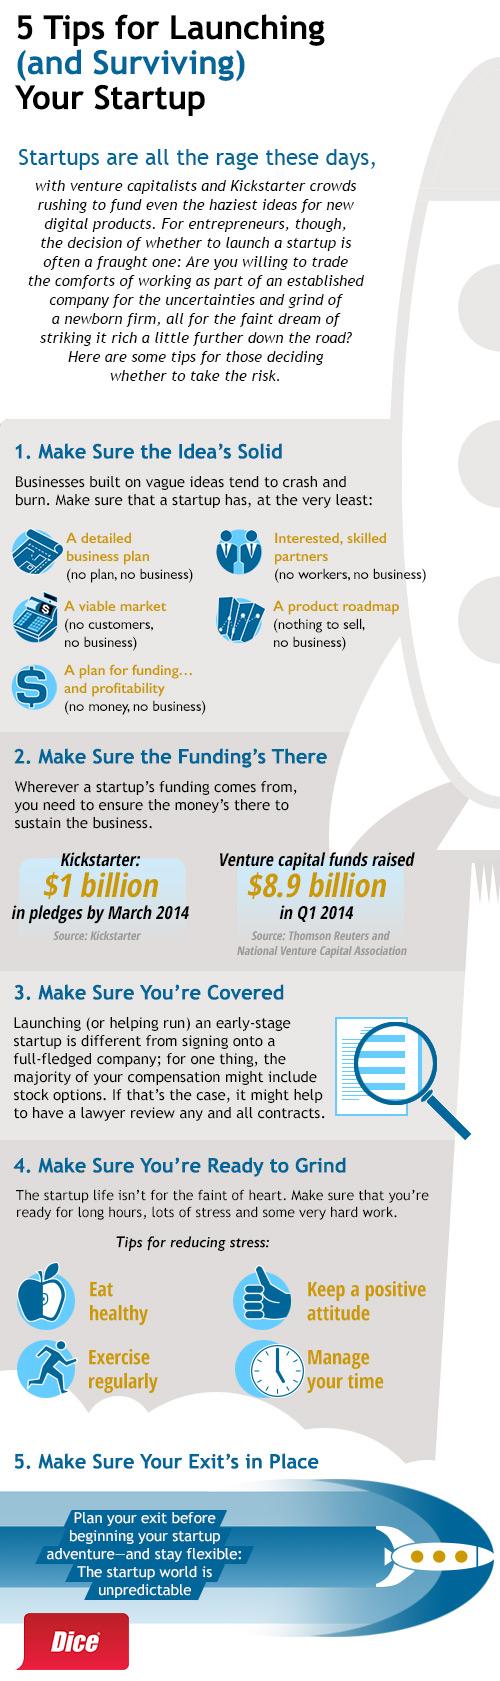 Launching-Startup-Infographic.jpg